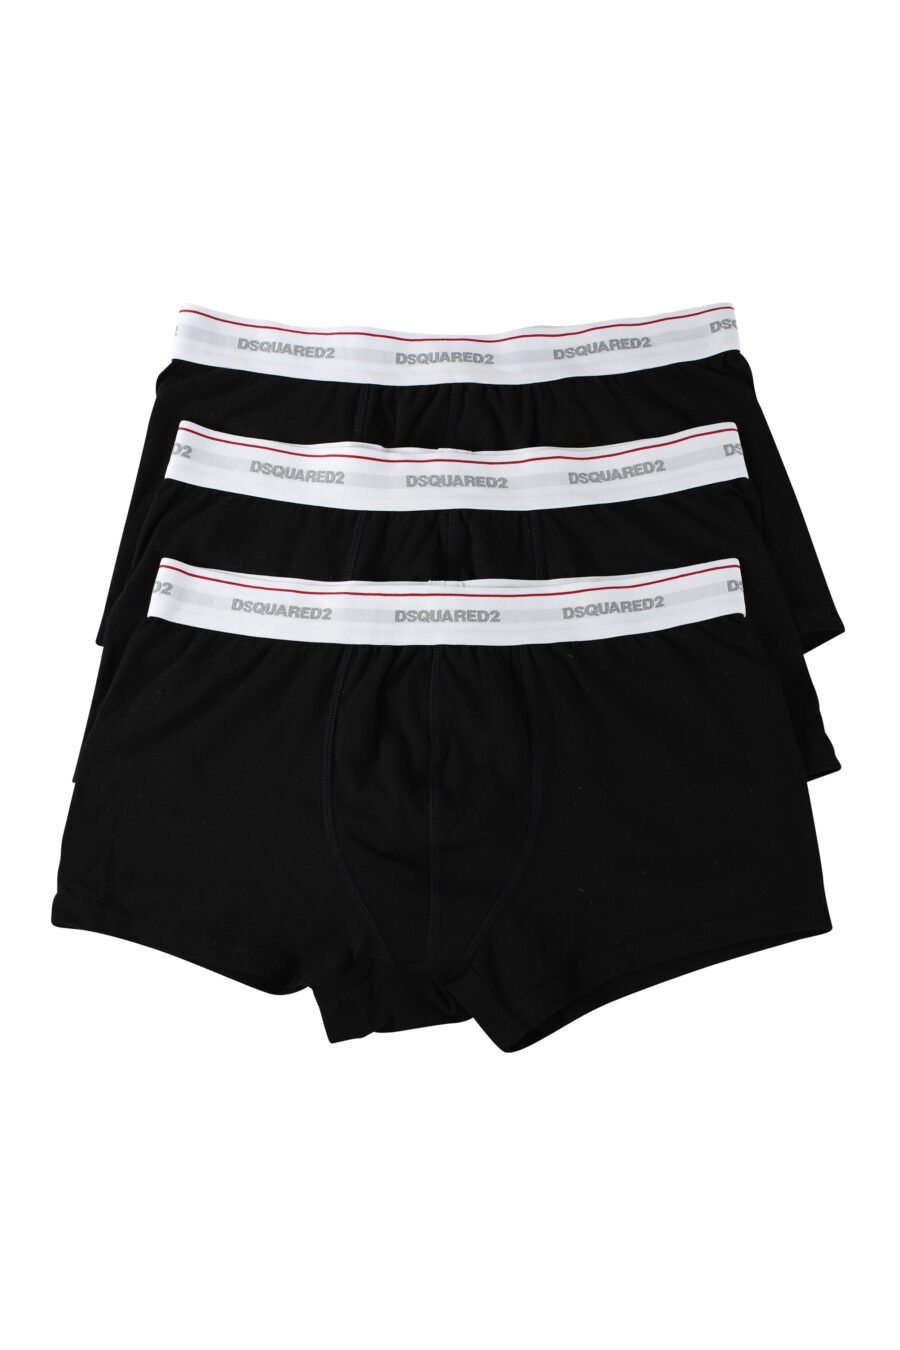 Pack de tres boxers negros con logo en cinturilla blanco - IMG 9635